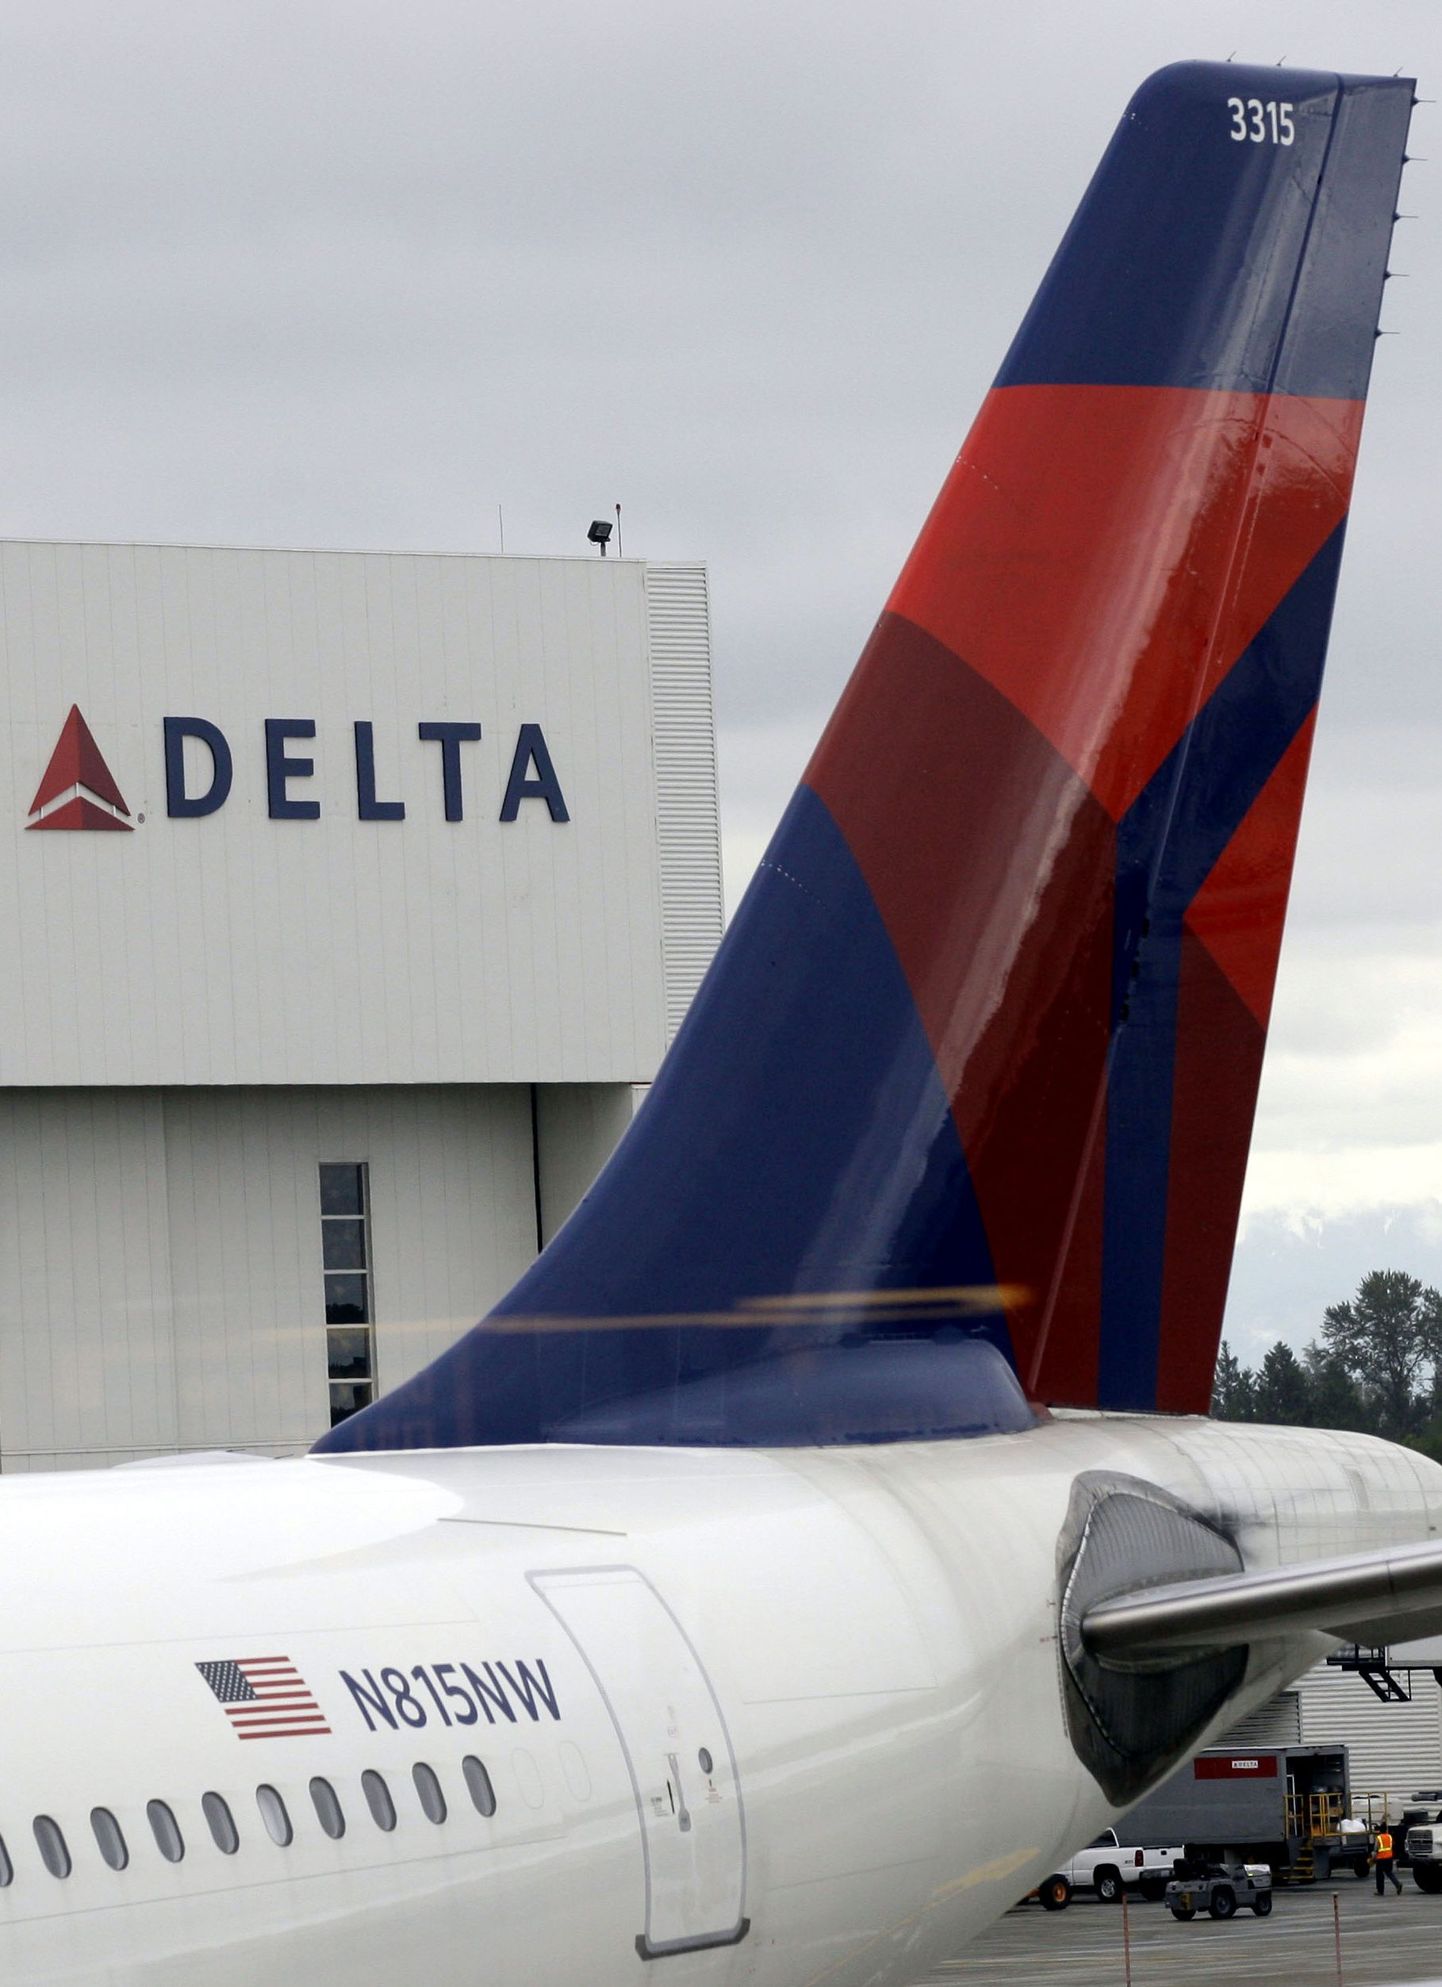 Ameerika lennufirma Delta Air Lines võttis tõsiselt ette teeninduskvaliteedi parandamise.